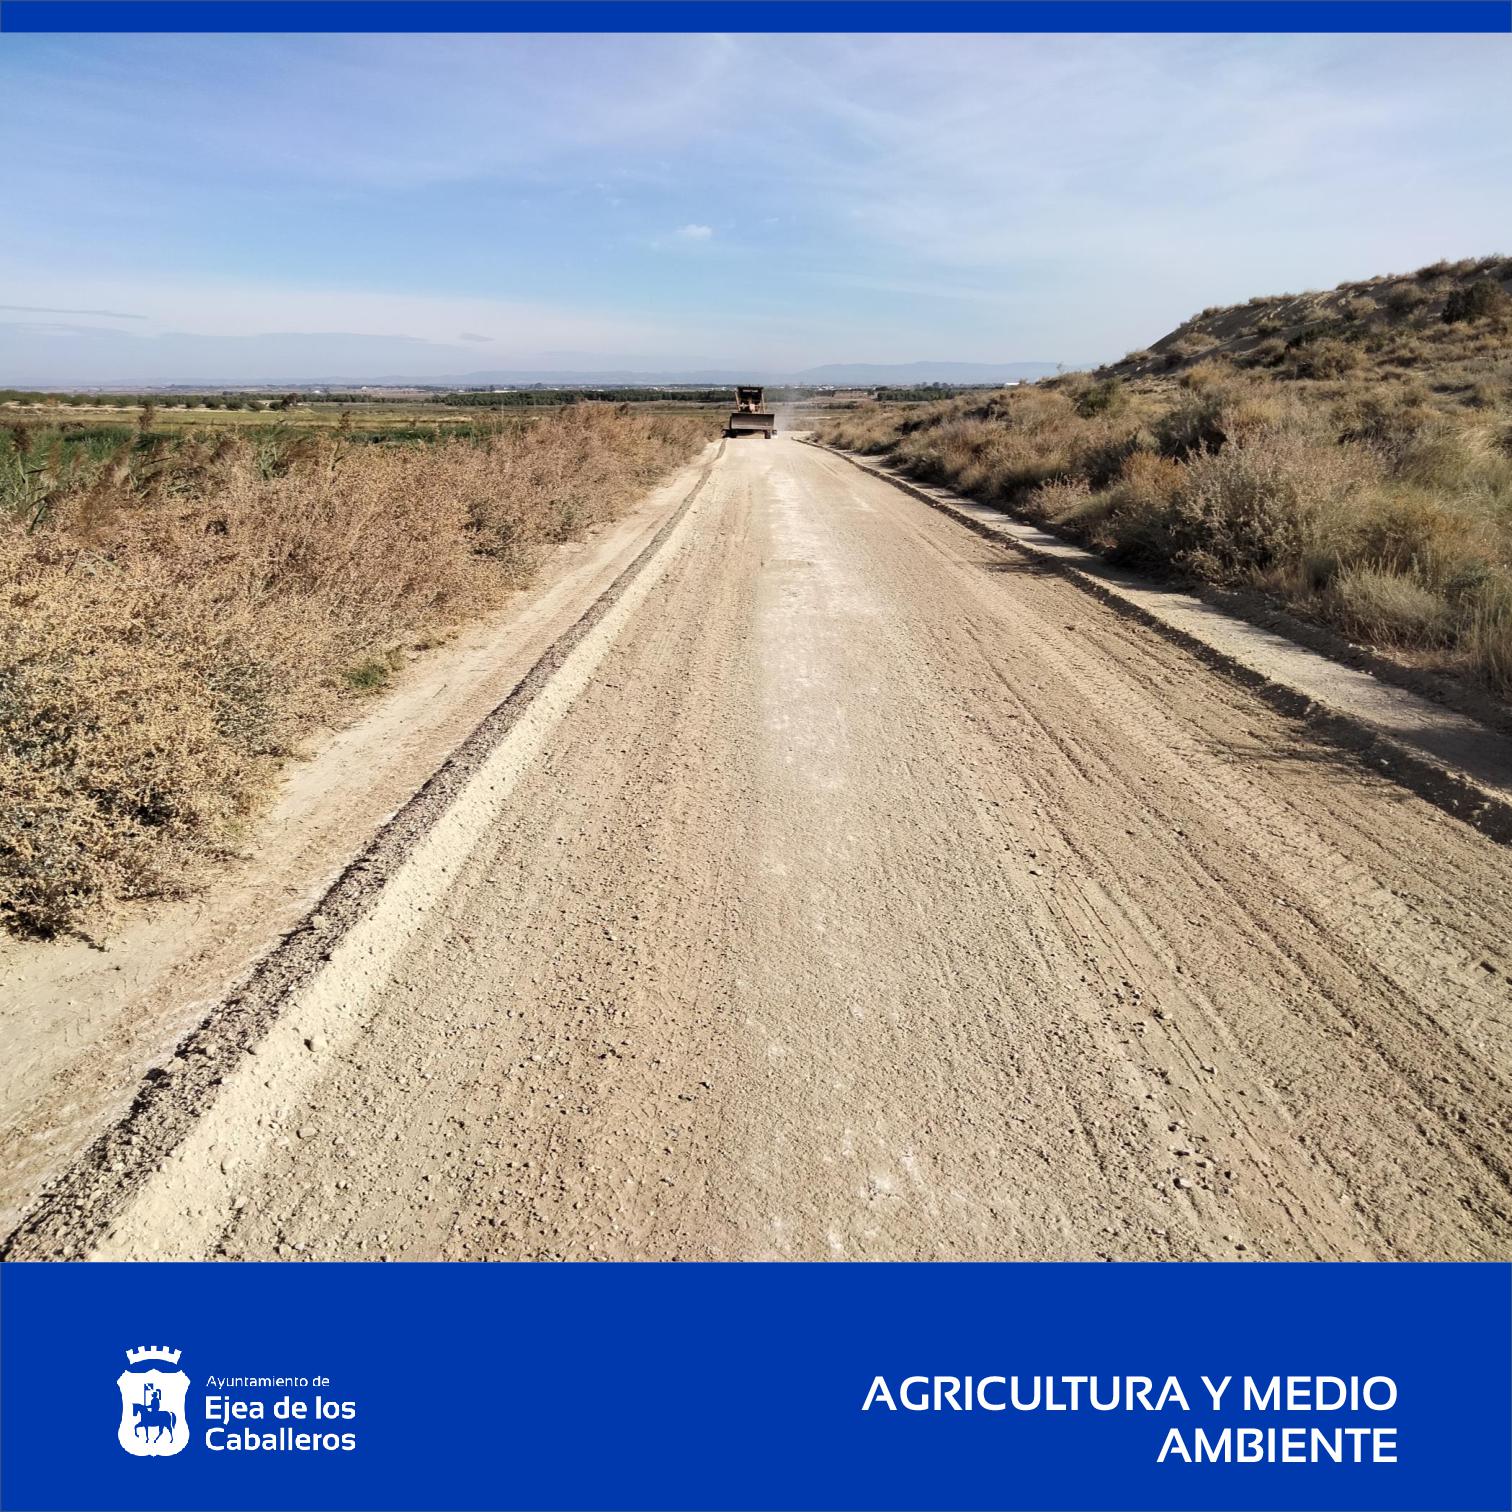 En este momento estás viendo En marcha la adecuación y mejoras de varios caminos rurales en distintos parajes de Ejea